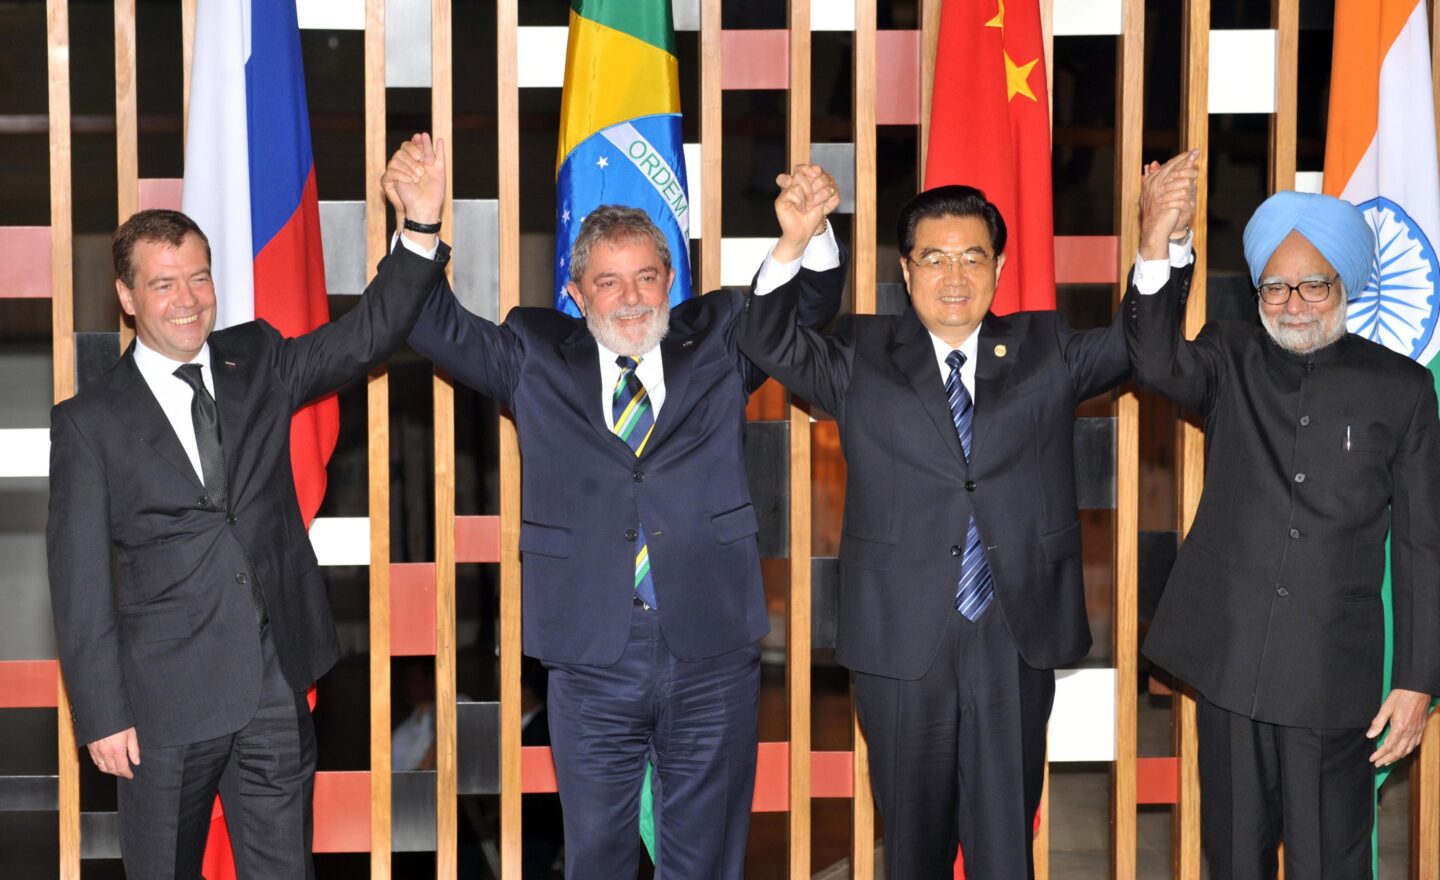 el presidente Dmitri Medvedev (Rusia), Lula (Brasil), Hu Jintao (China) y el primer ministro de la India, Manmohan Singh, tomados de las manos